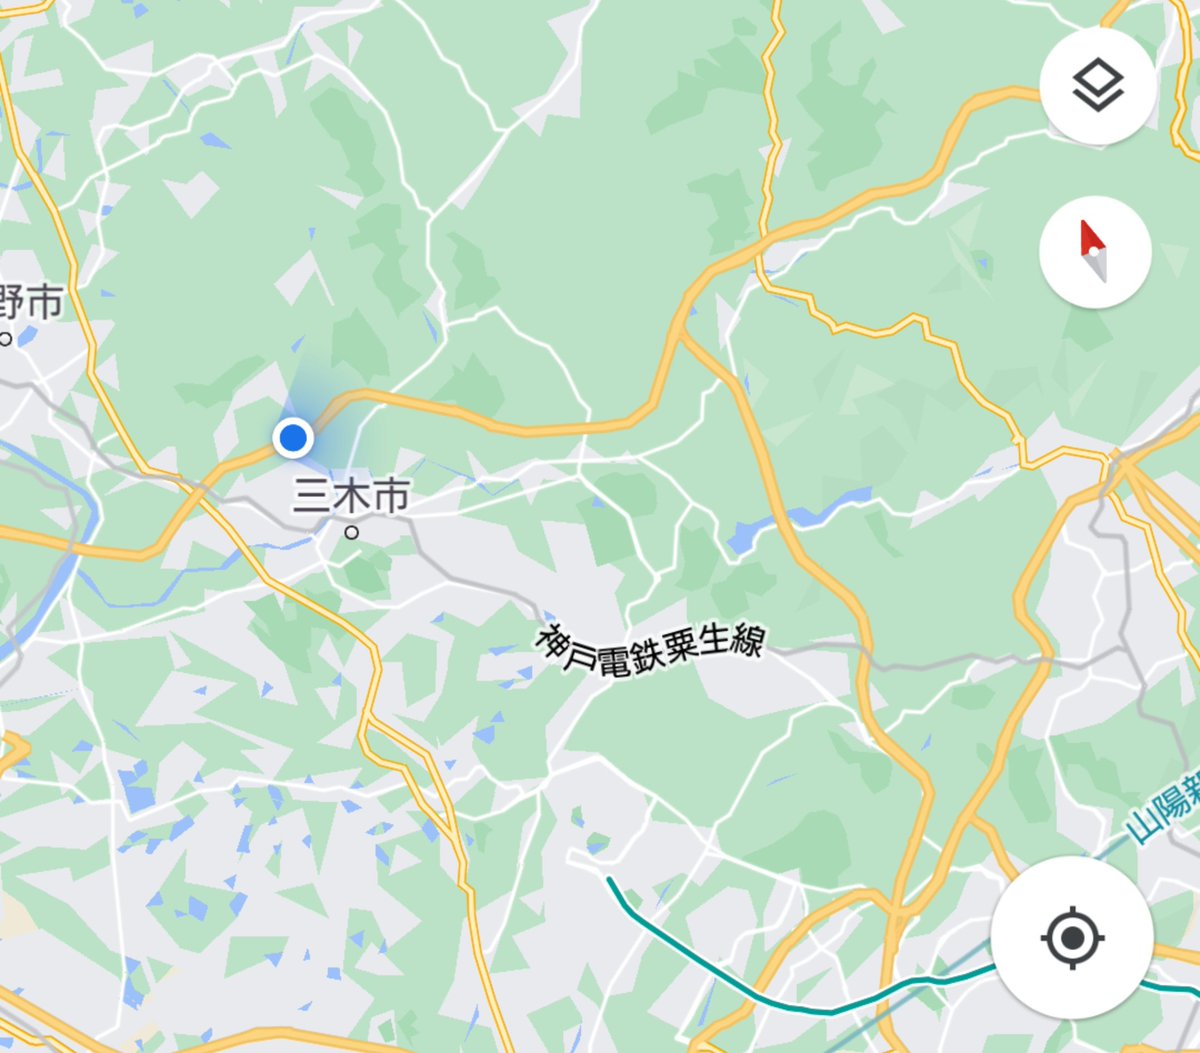 ウィンディ マギアレコード 答え 兵庫県にある 三木市 です このあたりのことは全く知らないのですが 神浜市は神戸市と横浜市が モデルとなっていると言われているので 神戸市のすぐ近くである三木市は もしかしたら二木市のモデルなのでは とか思い